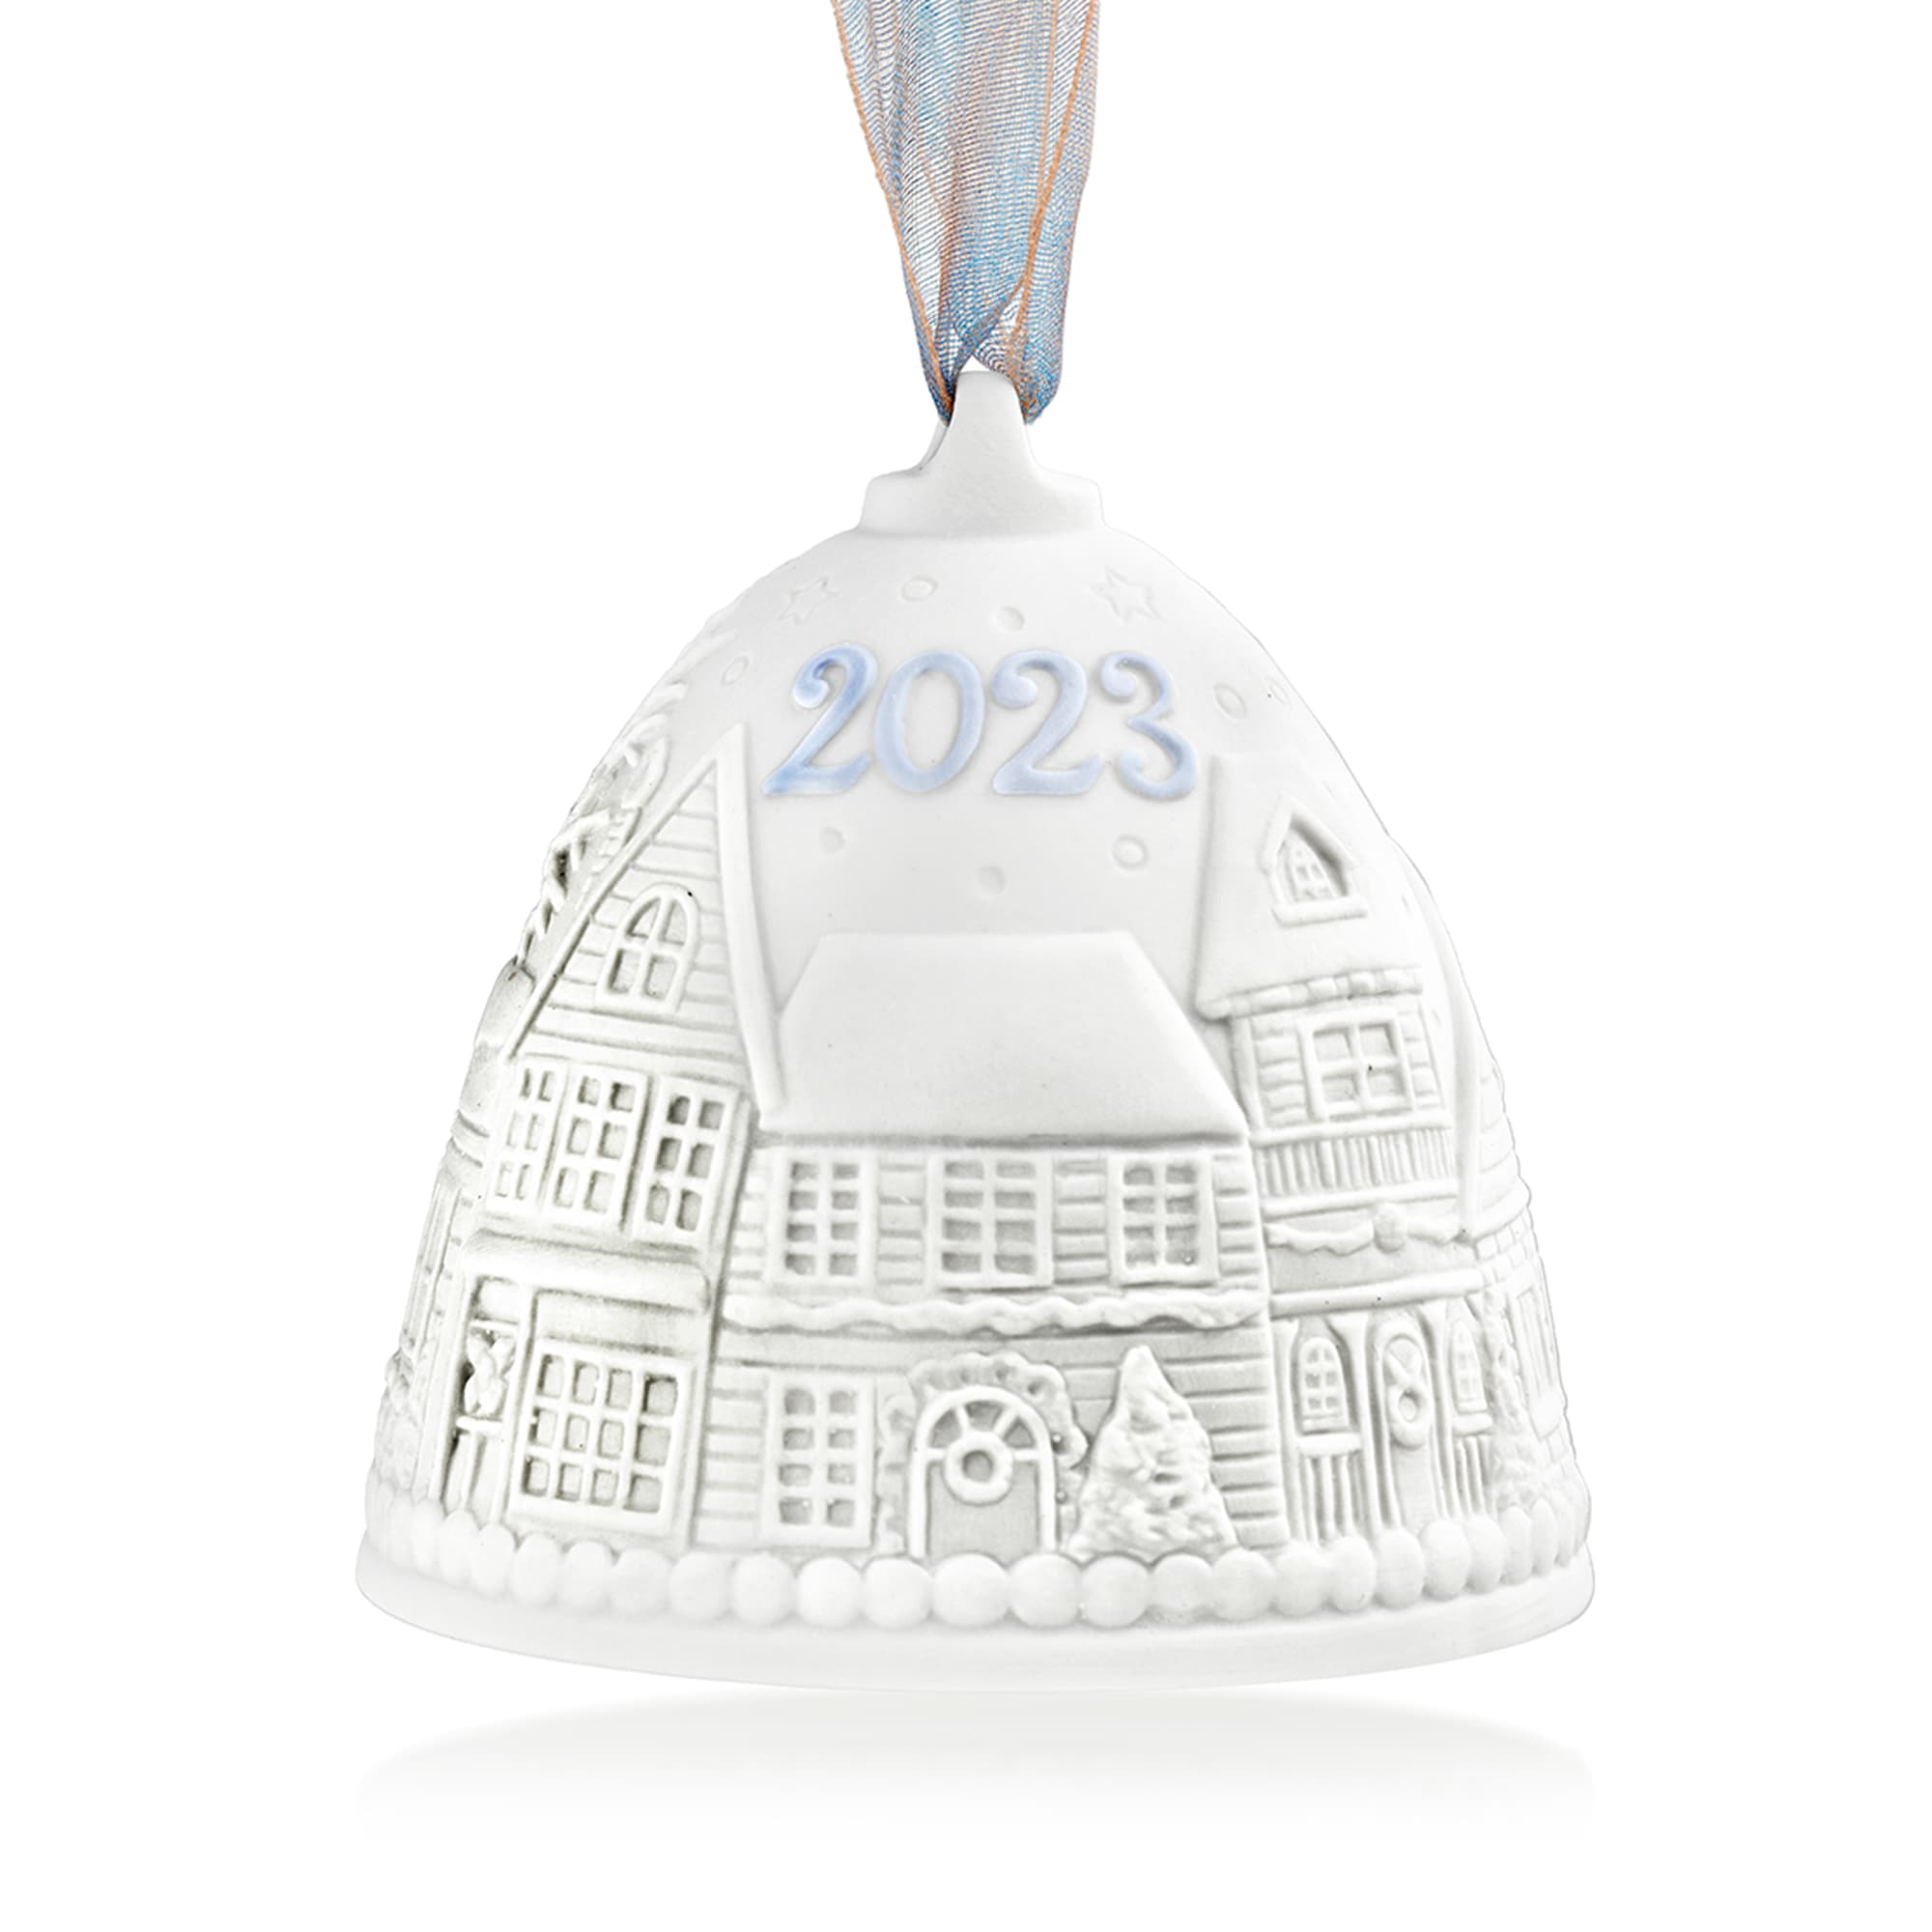 Lladro 2023 Porcelain Annual Christmas Bell Ornament RossSimons